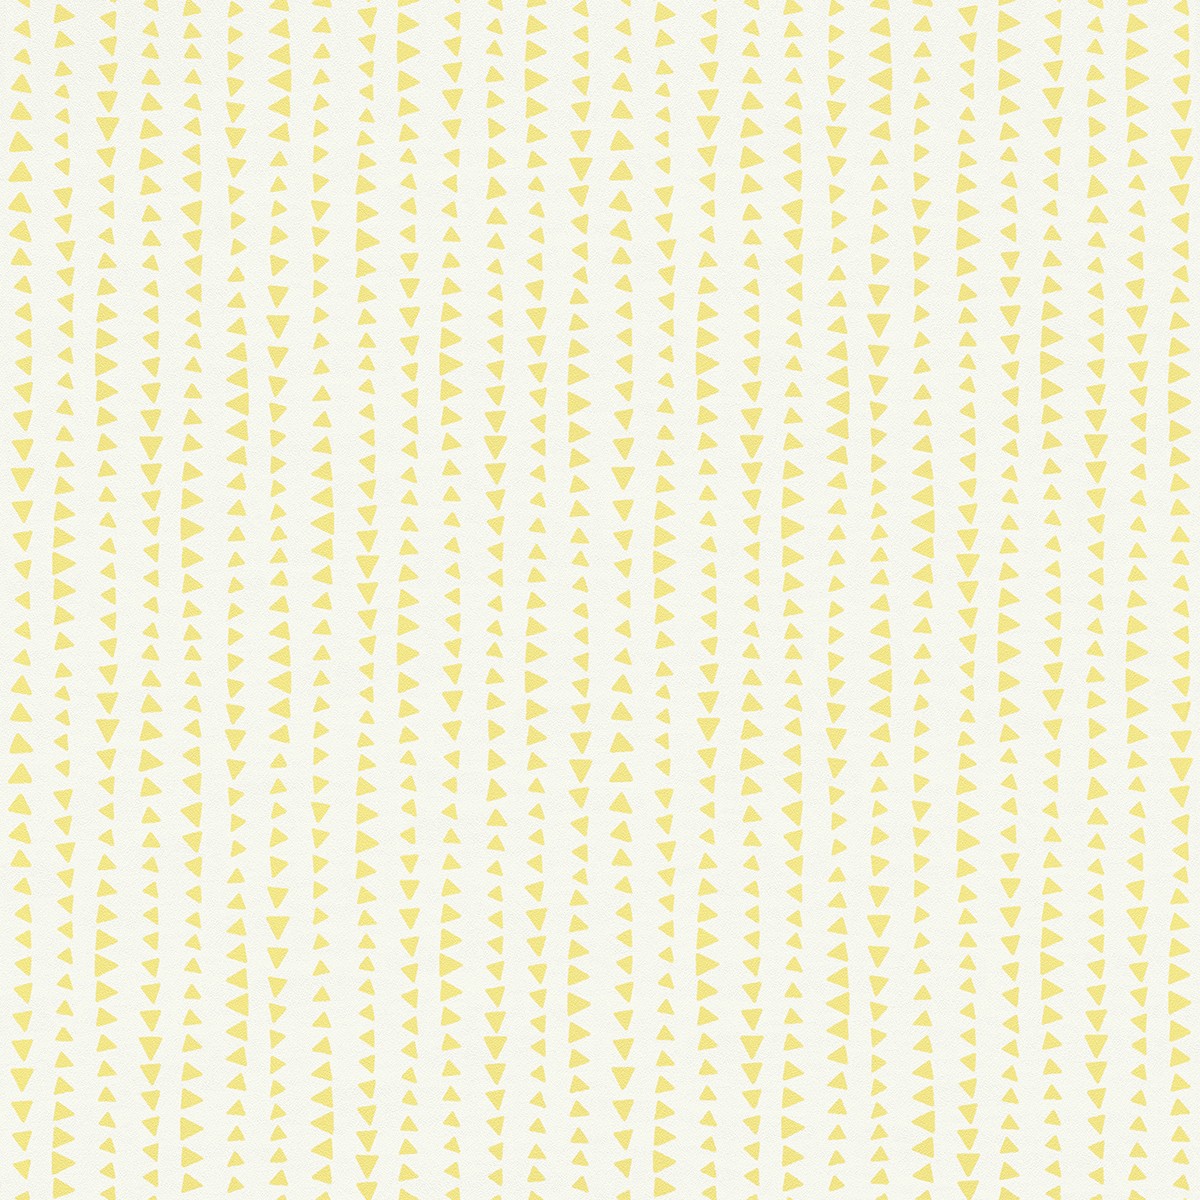 Ταπετσαρία τοίχου Rasch Bambino XVIII  249156 Παιδικό μοτίβο κίτρινο 10,05x0,53